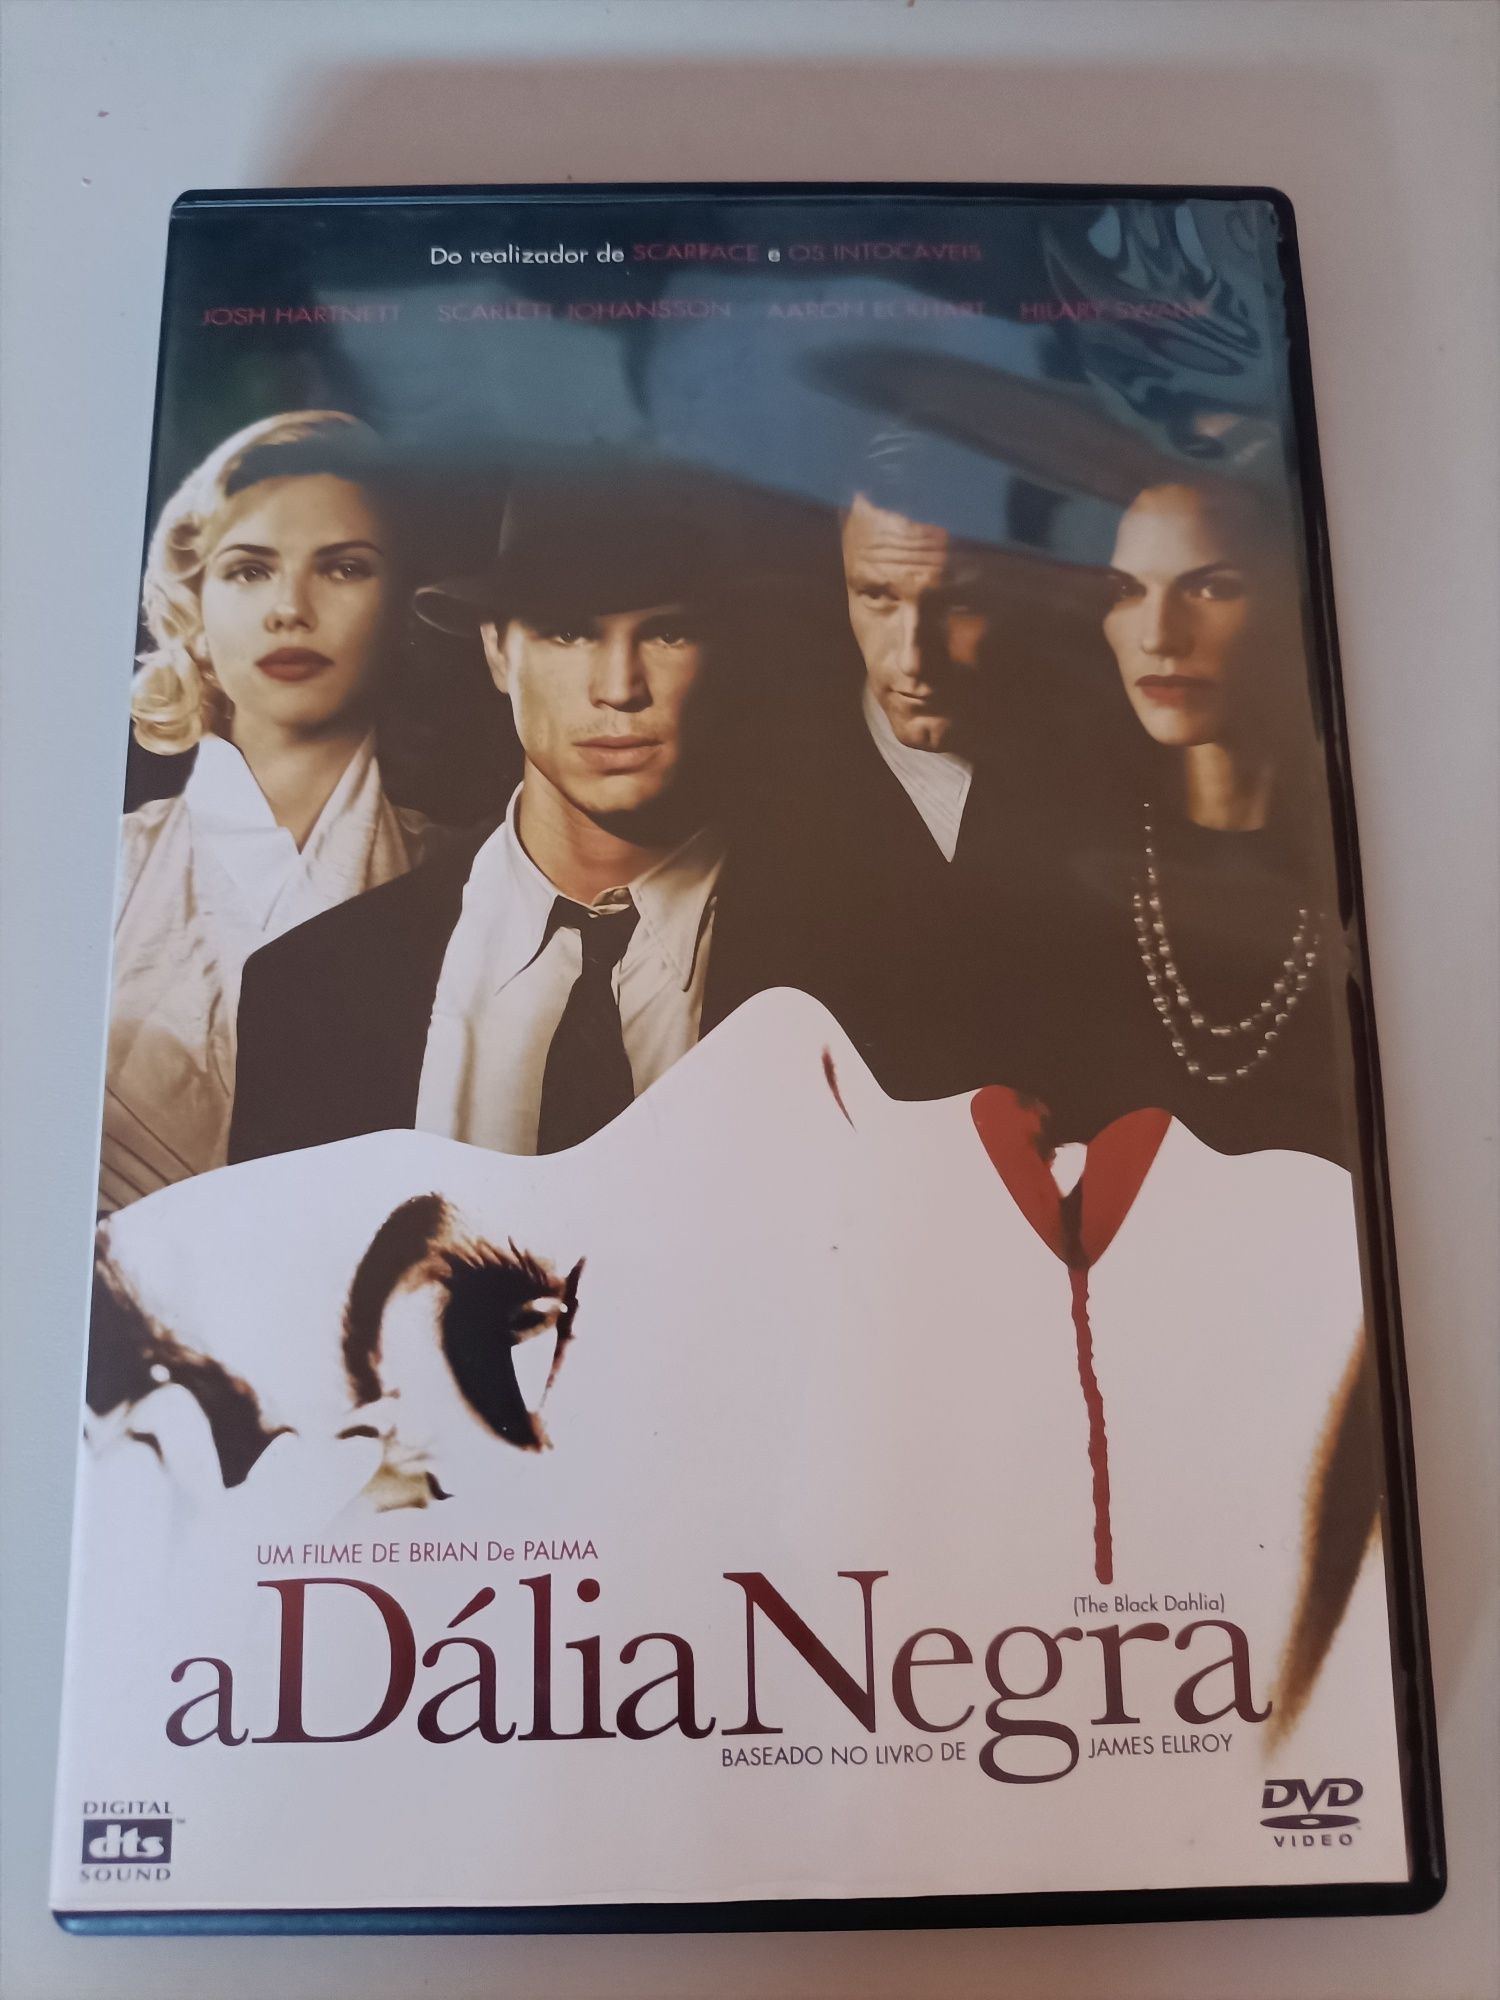 DVD original, "A Dália Negra"